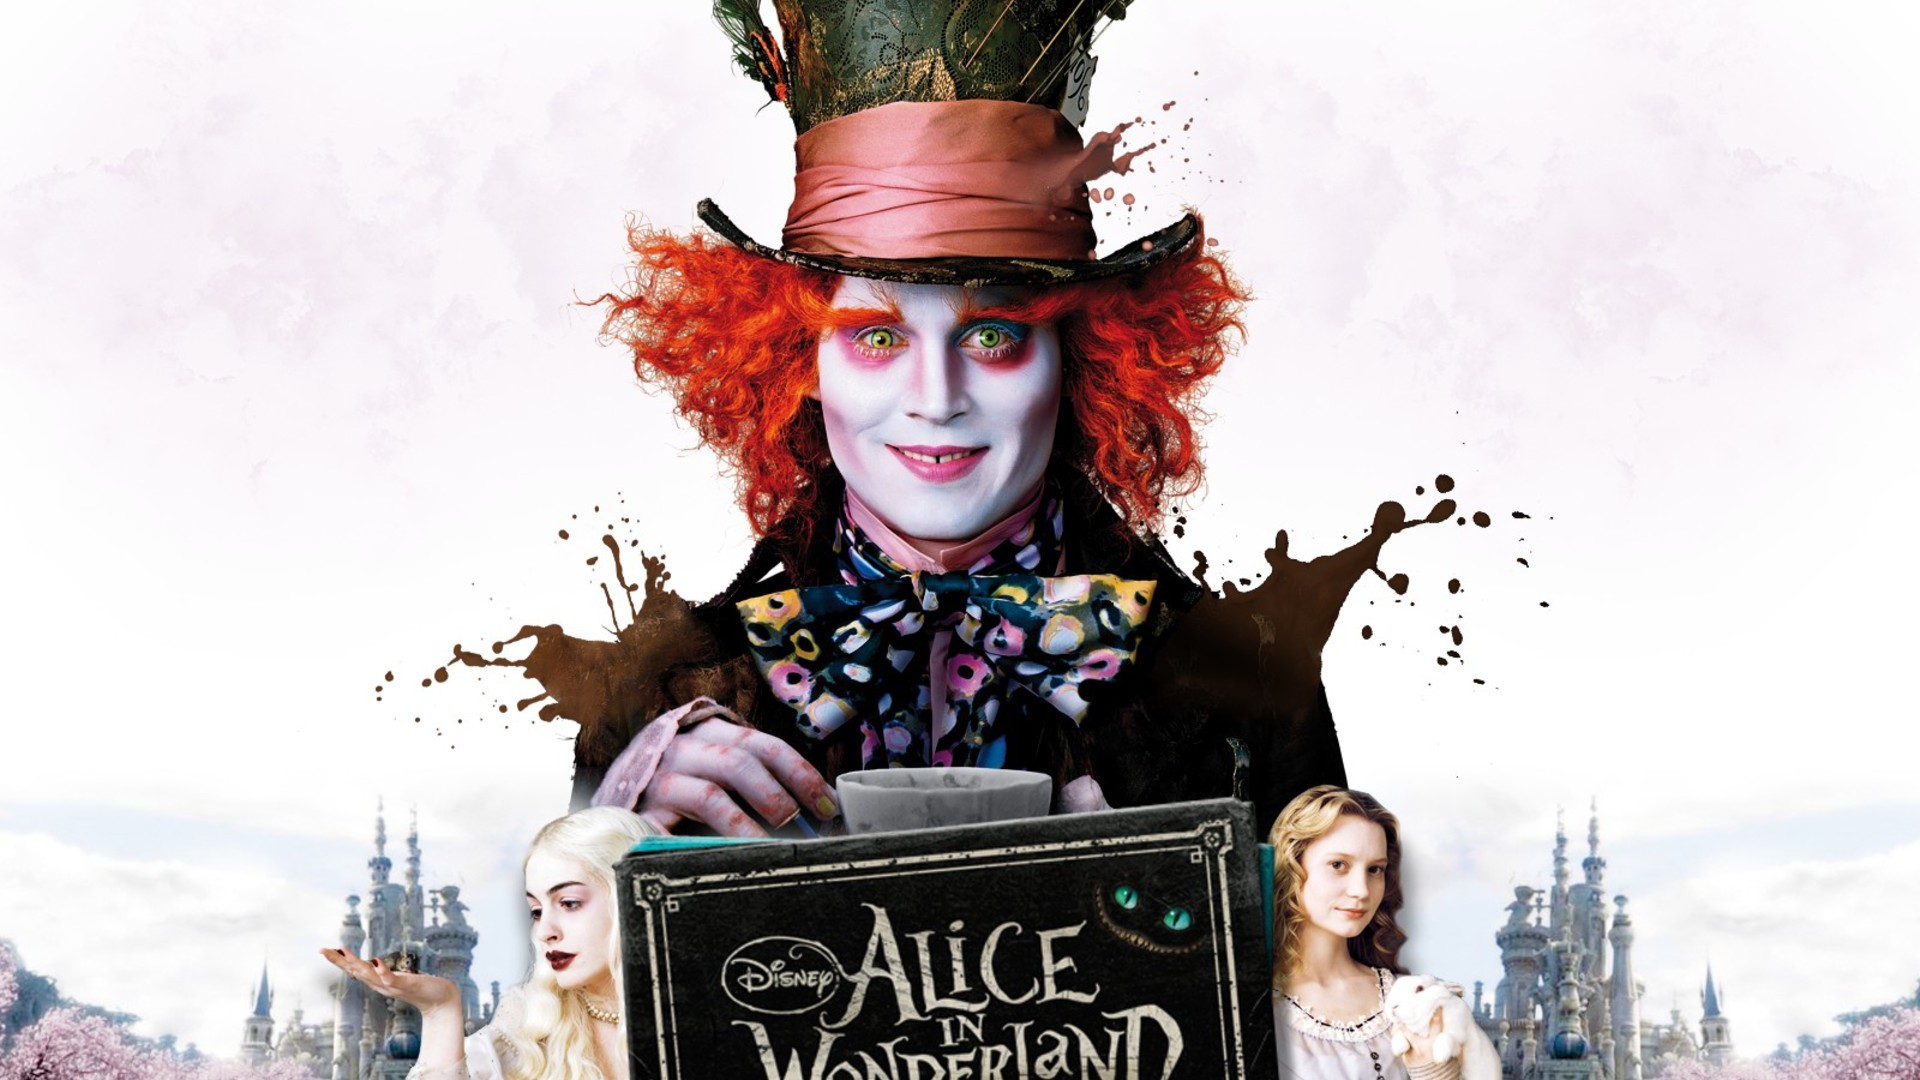 Wallpaper  1080x1920 px Alice in Wonderland cake fairy tale Mad Hatter  1080x1920  4kWallpaper  1216591  HD Wallpapers  WallHere